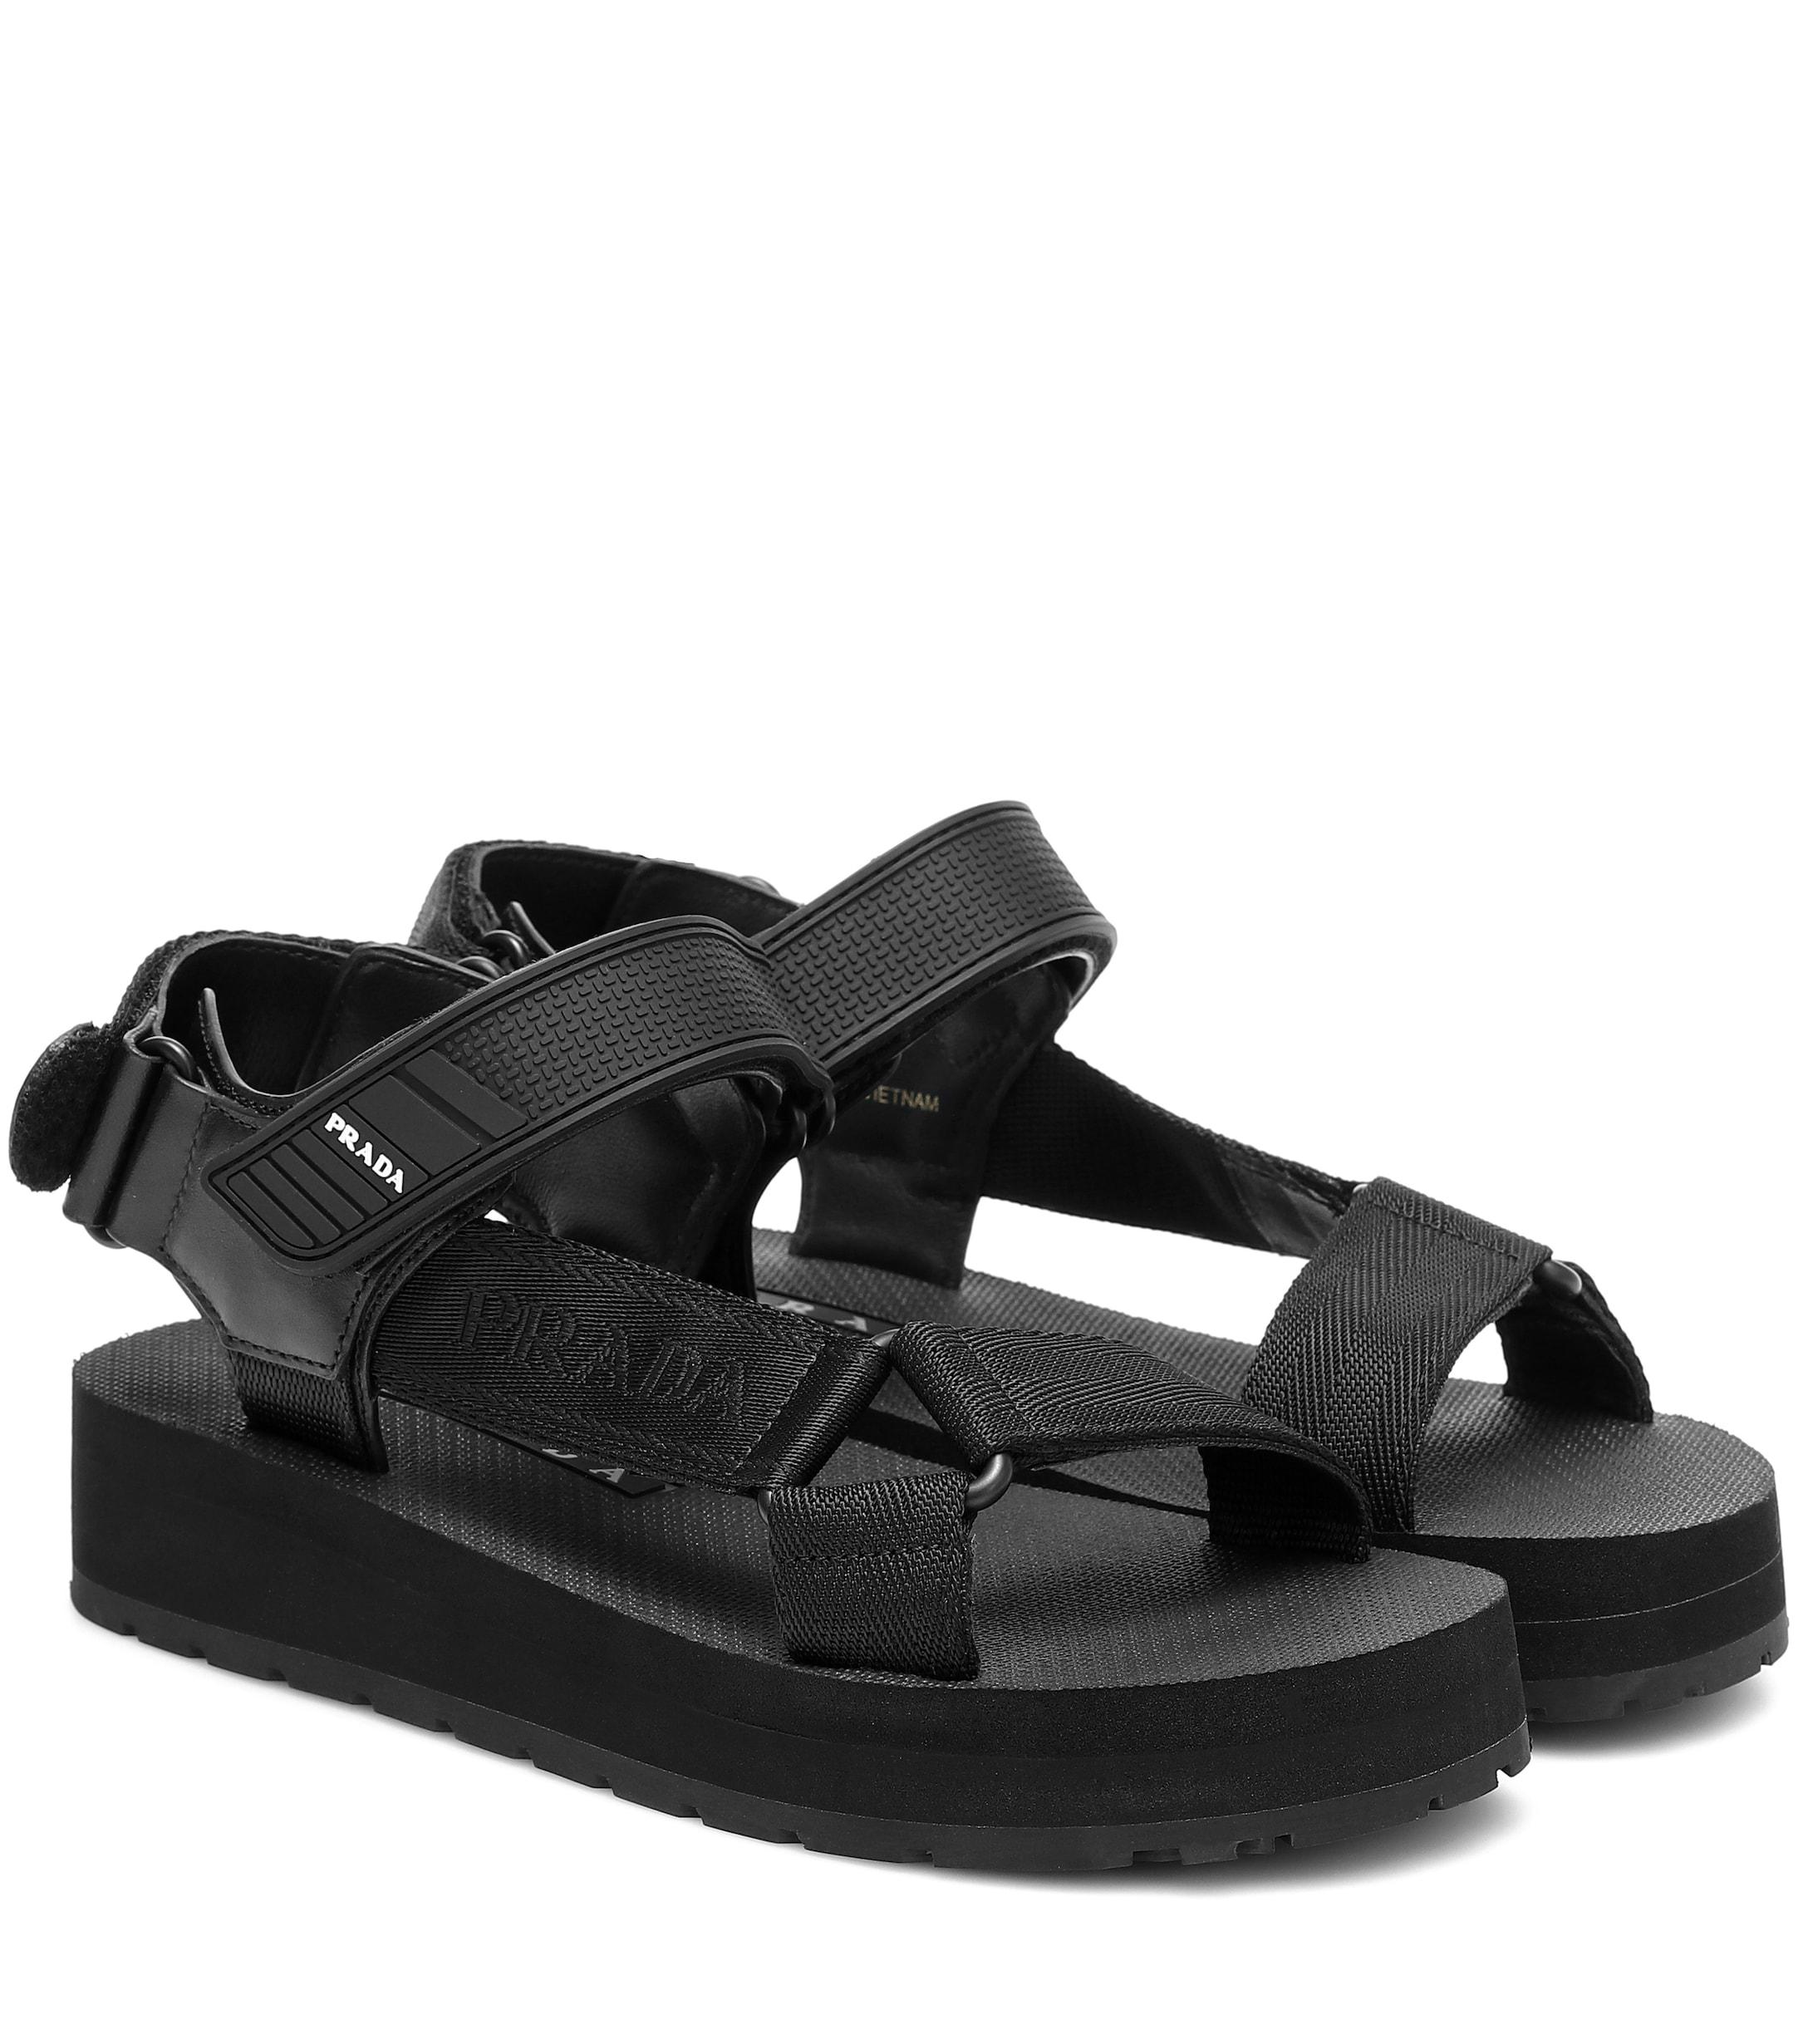 Prada Nomad Sandals in Black - Lyst